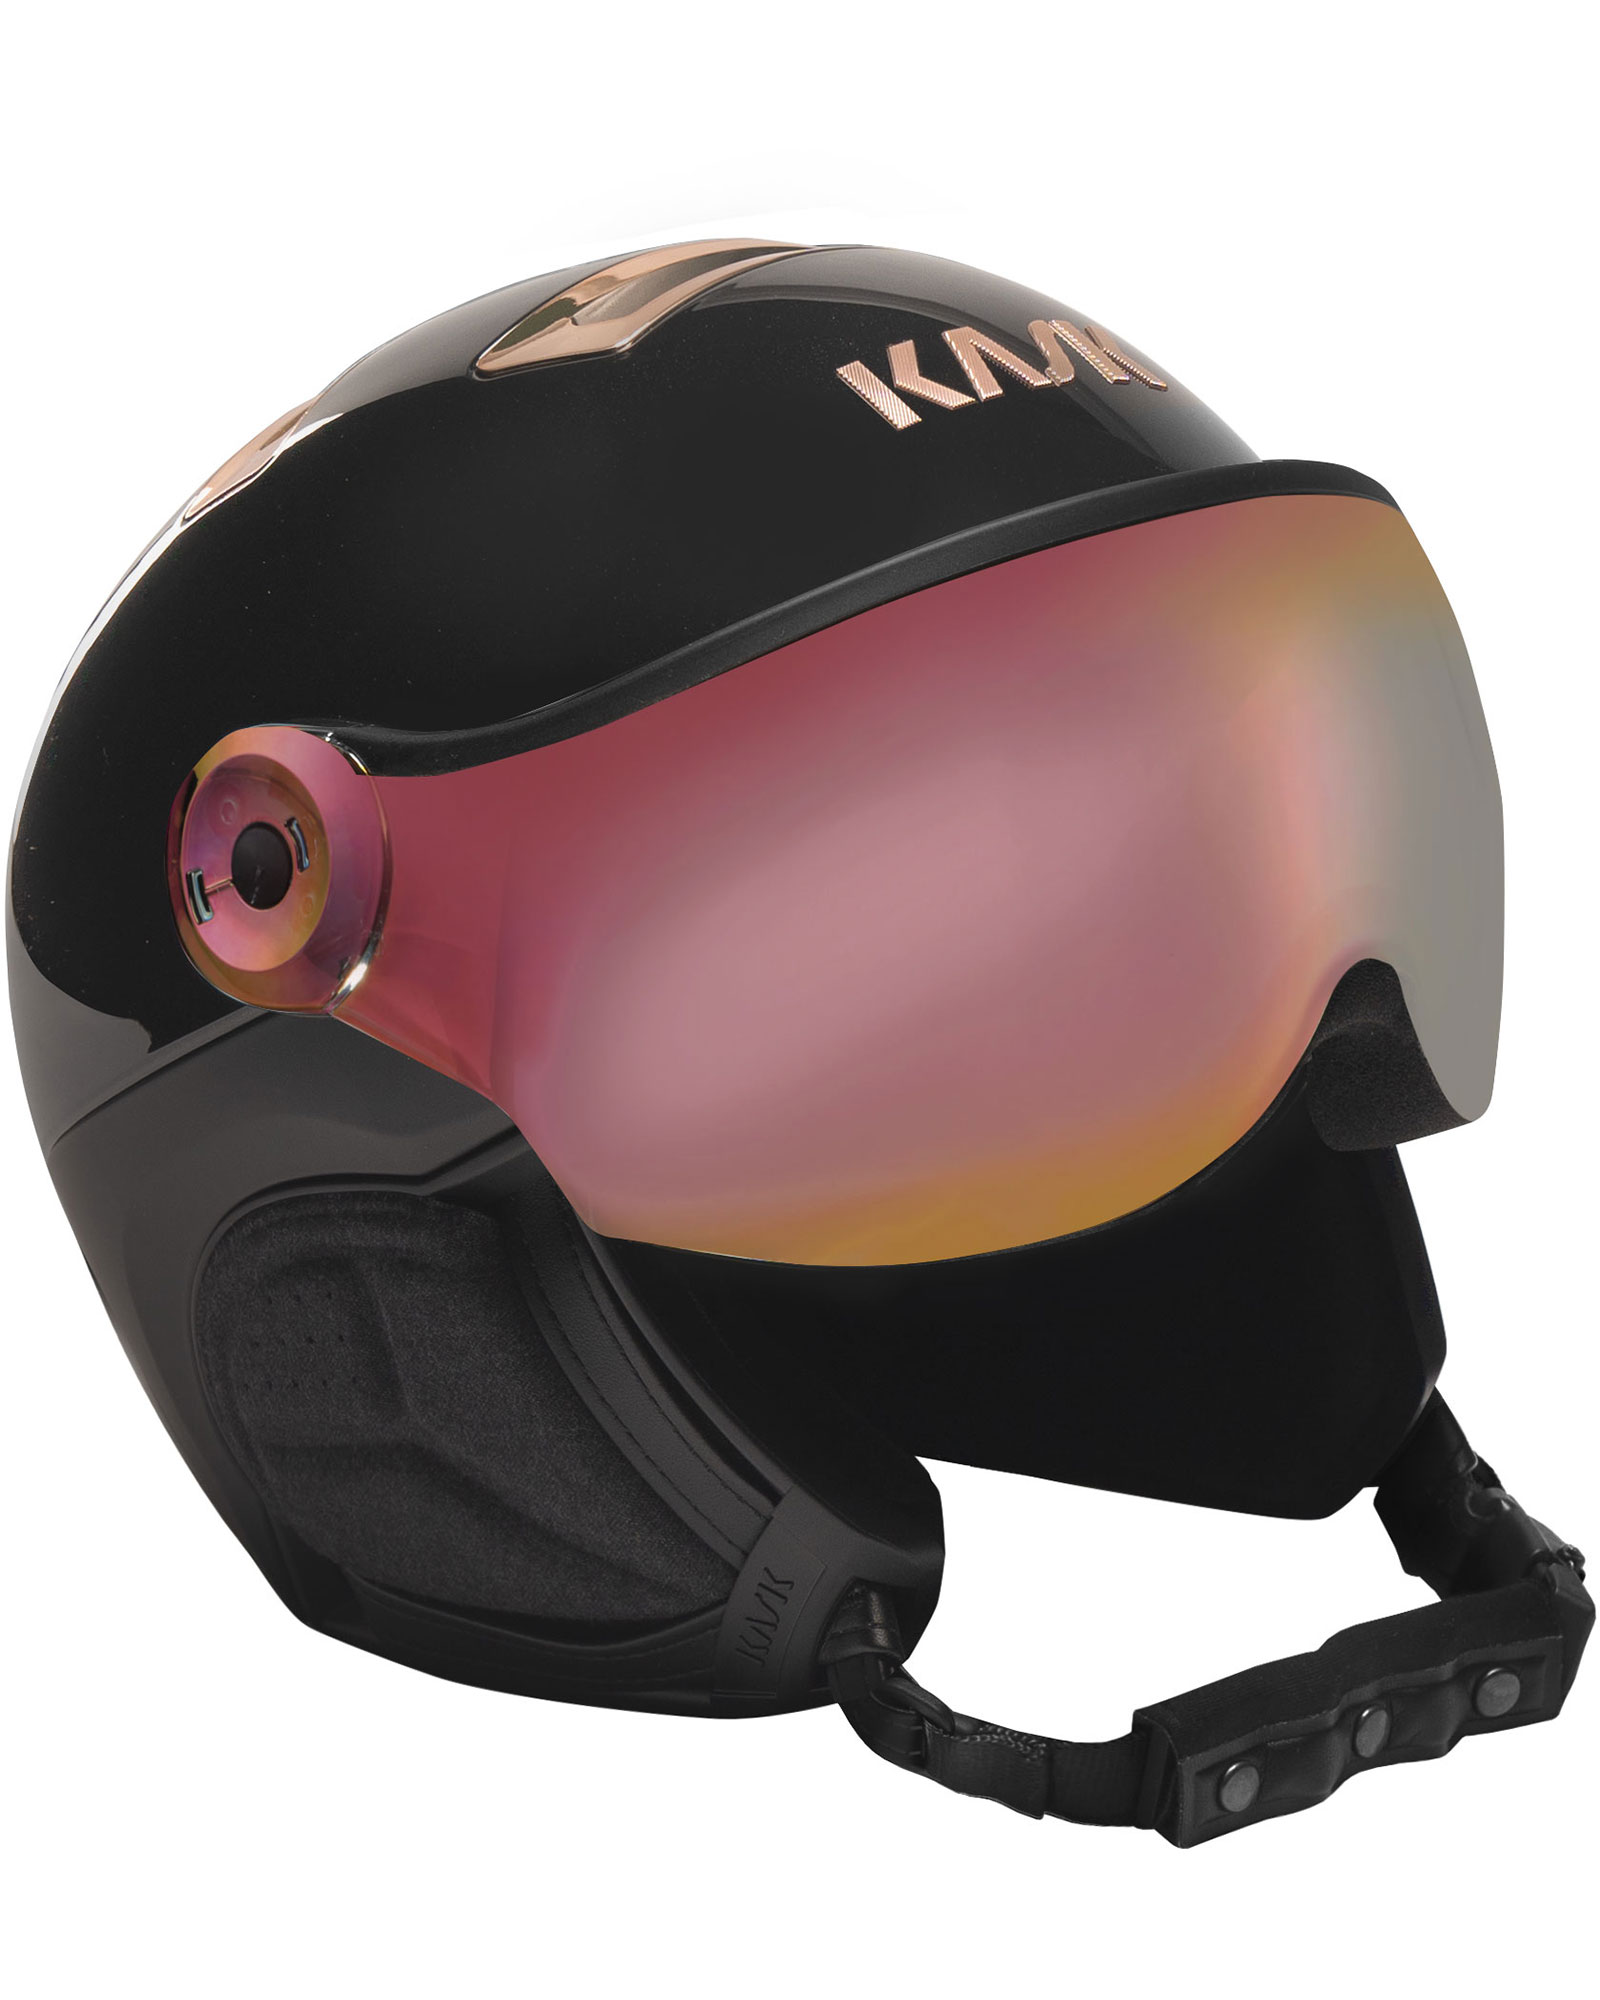 KASK Chrome Visor Helmet - Black/Pink Gold - Pink Gold Mirror Visor M